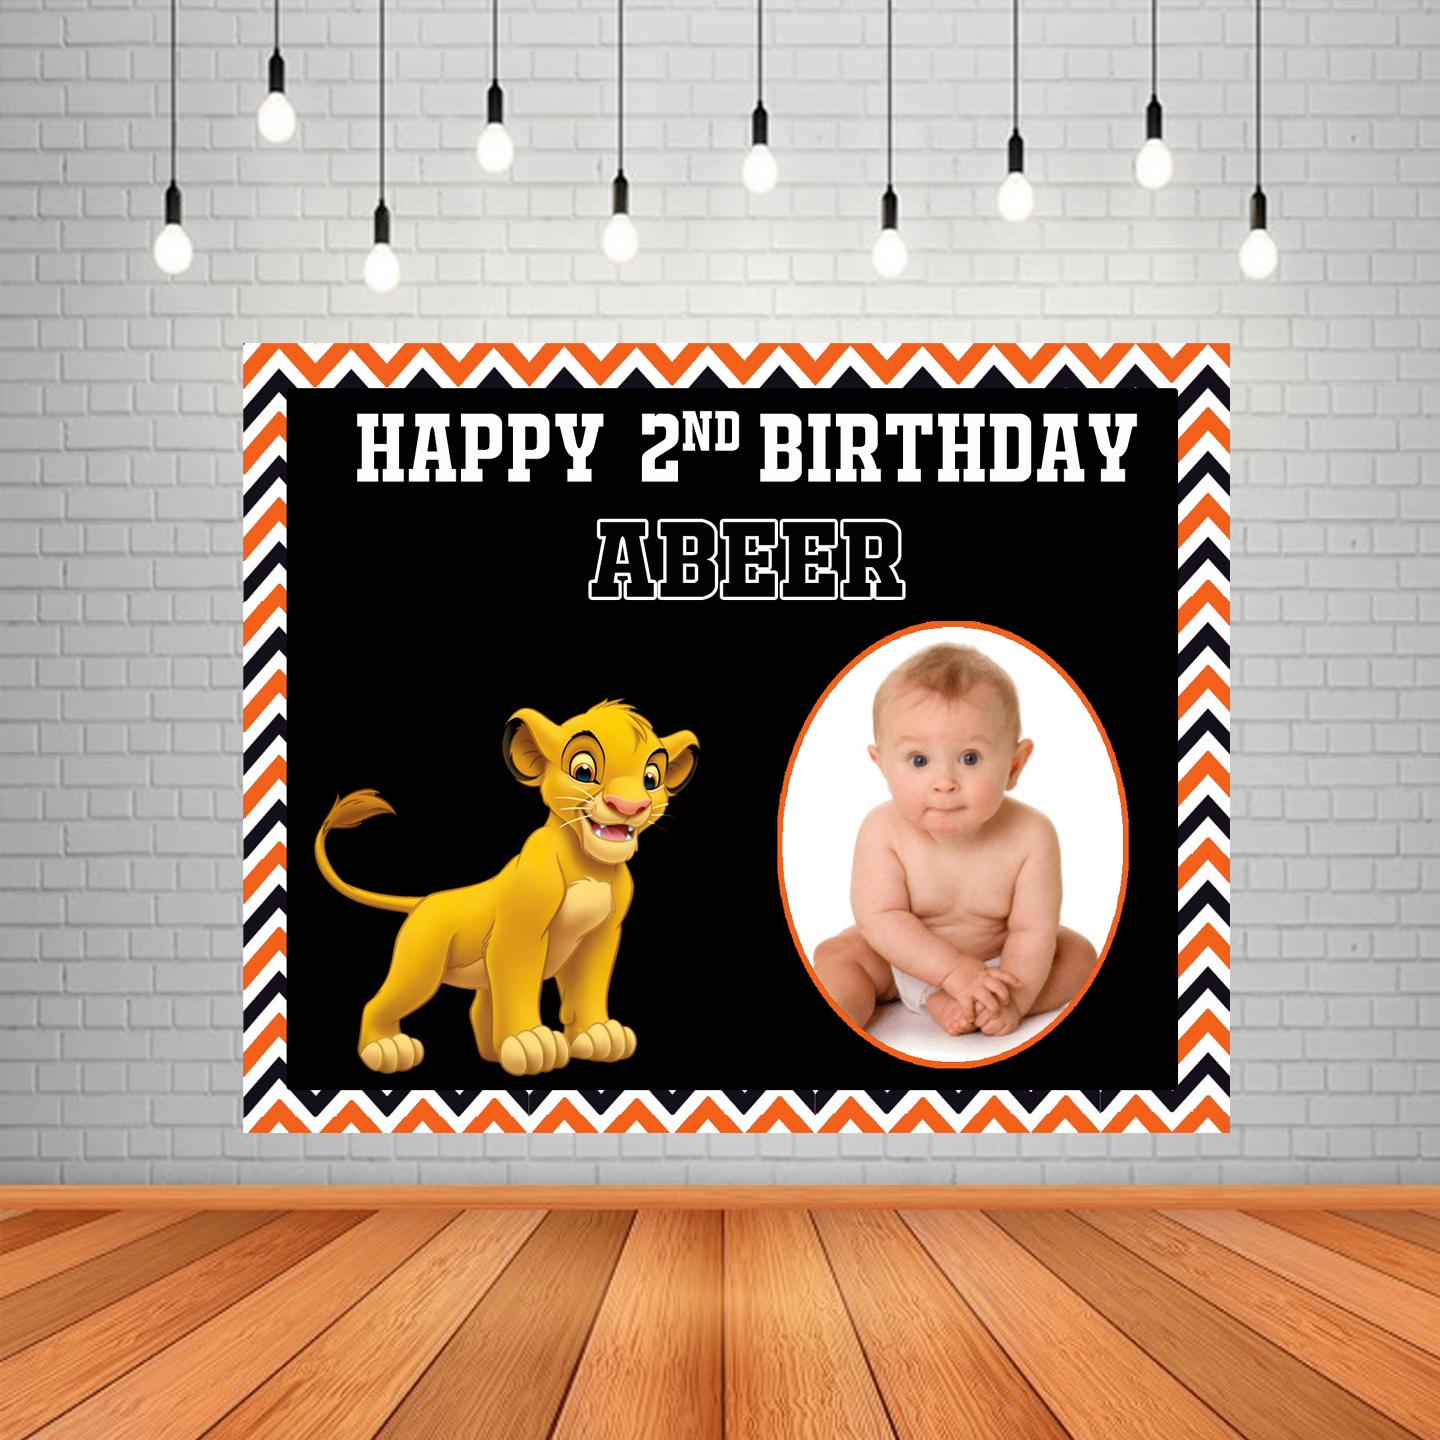 Banner sinh nhật (Birthday backdrop banner) + Simba (Lion King): Sắp tới sinh nhật của con bạn, hay cùng chọn một backdrop sinh nhật đầy màu sắc và đáng yêu cho bé nhé. Với hình ảnh Simba, chú sư tử dũng mãnh, banner sinh nhật sẽ trở nên đặc biệt hơn bao giờ hết.